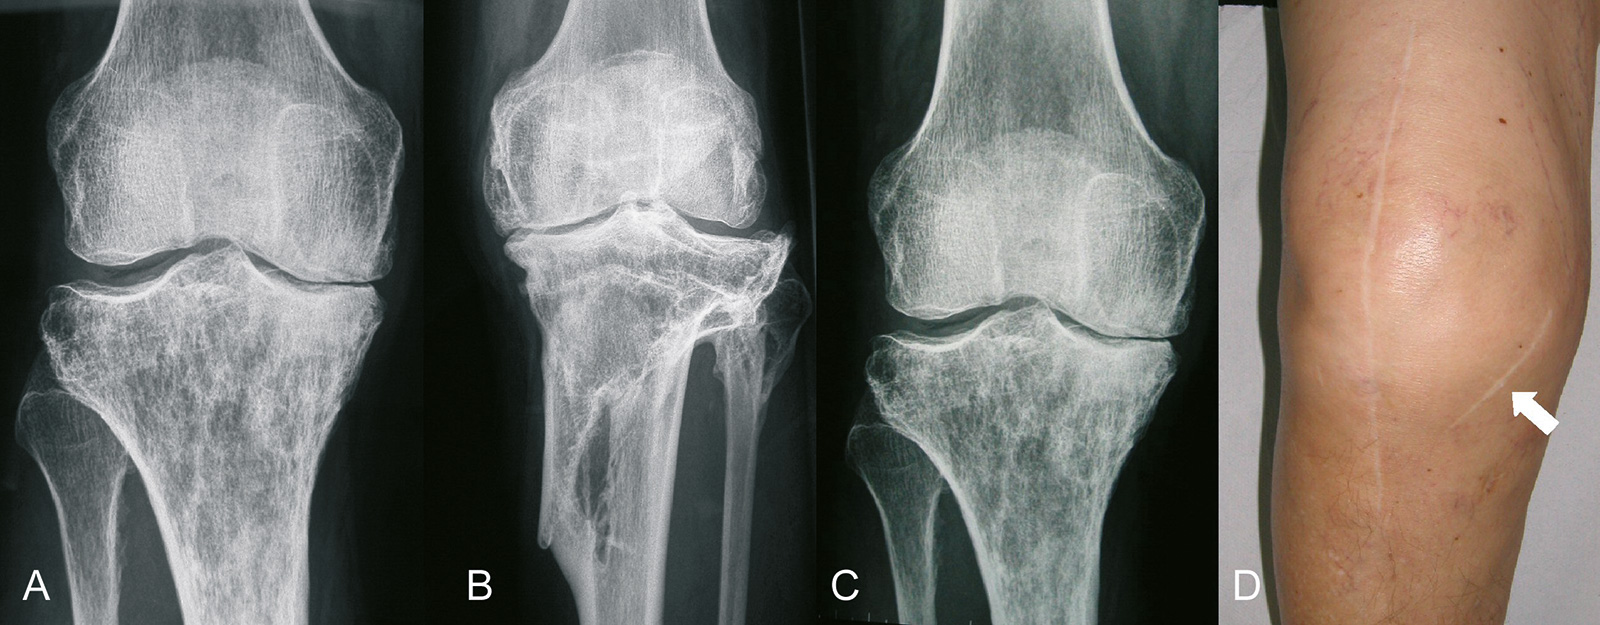 Abb. 1-28: Sekundäre Kniegelenksarthrose nach Therapie eines Riesenzelltumors (A), nach proximaler Tibiafraktur (B), nach Infektion (C) und nach offener Meniskektomie (D)